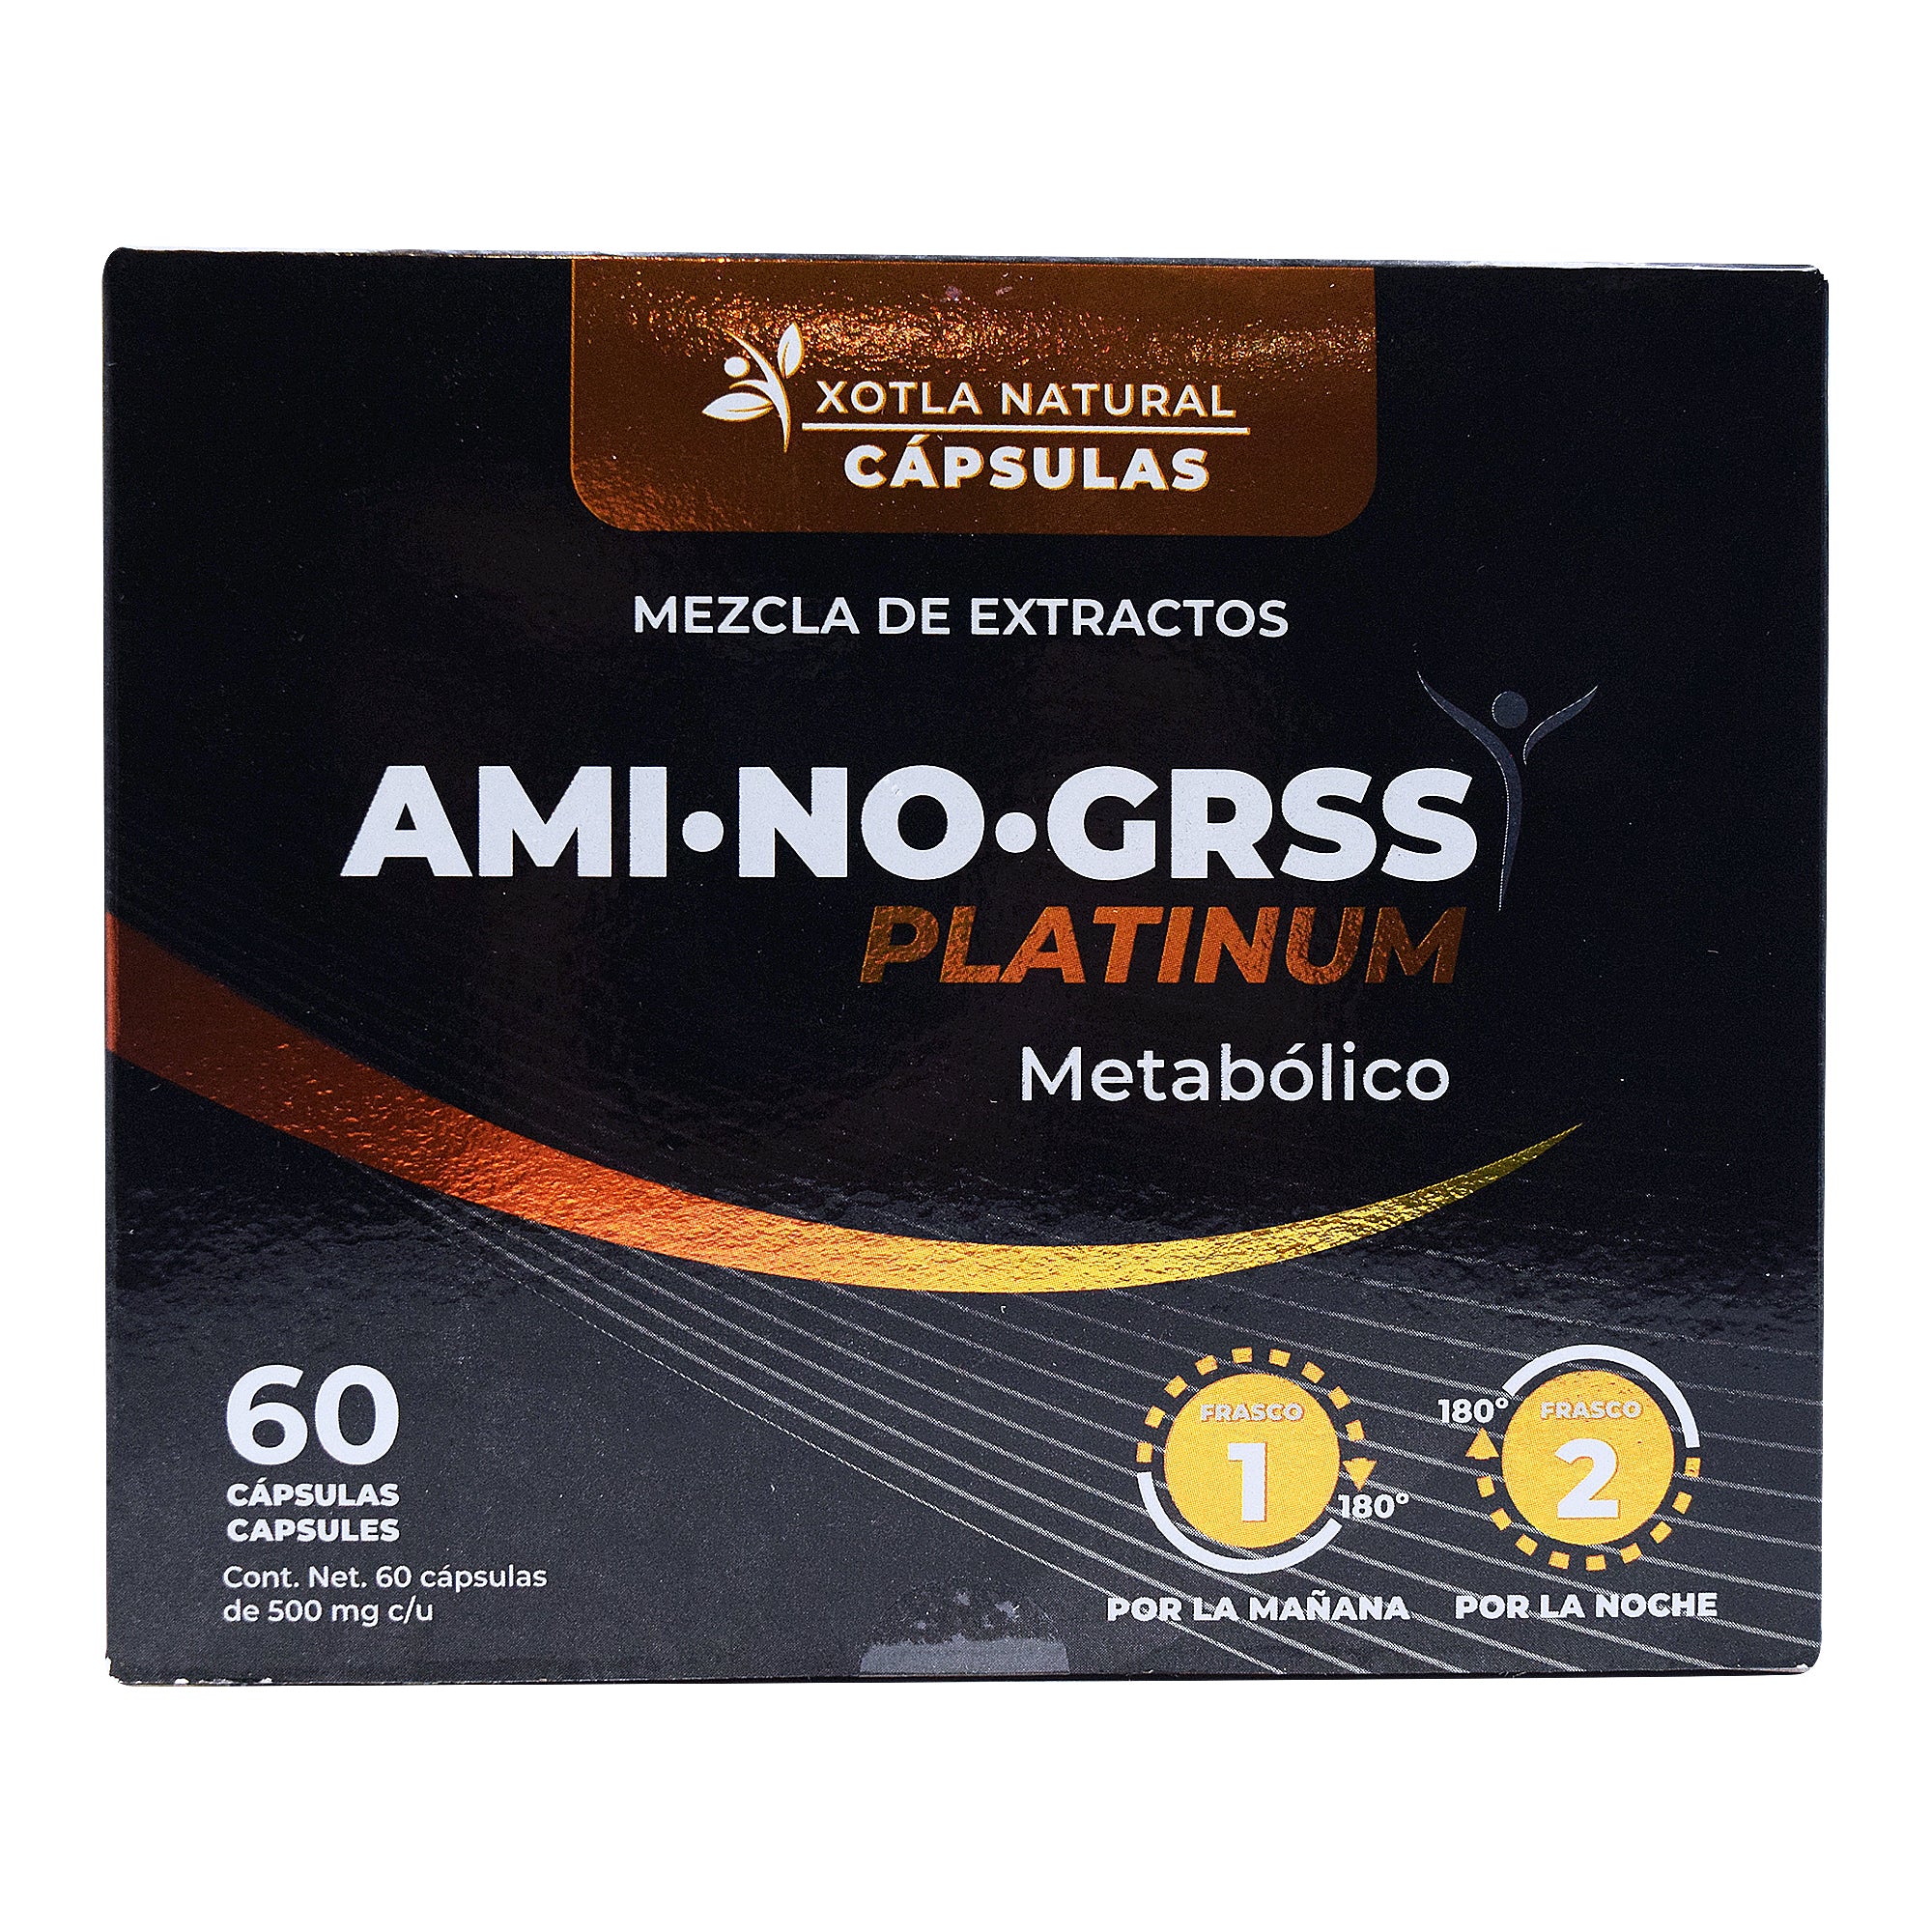 Aminogrss platinum 60 cap